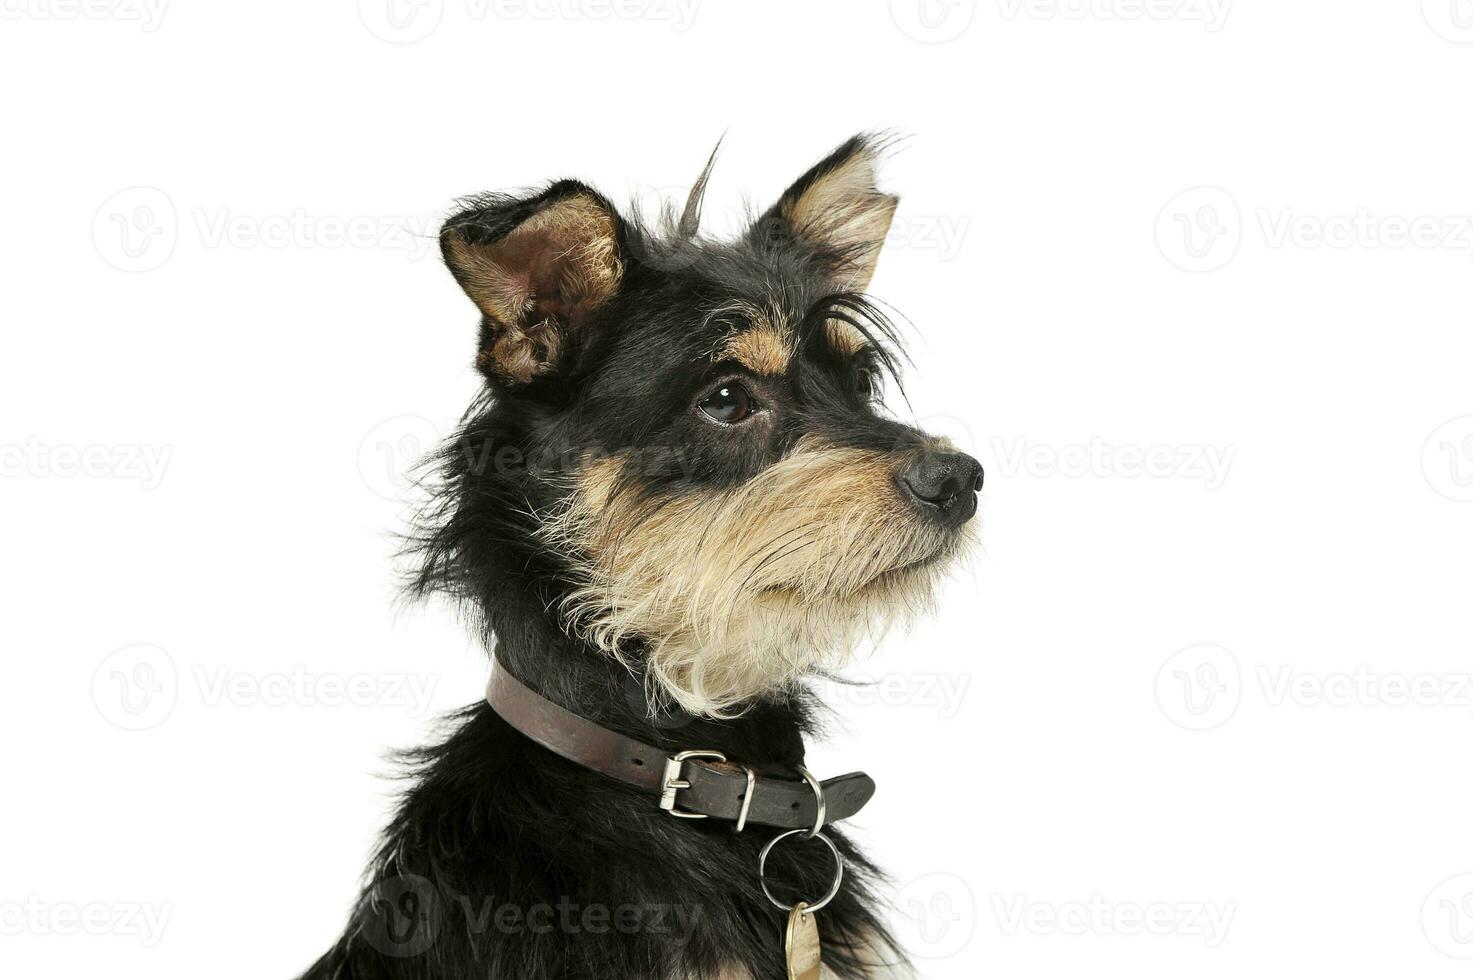 retrato do a adorável misturado procriar cachorro olhando curiosamente foto